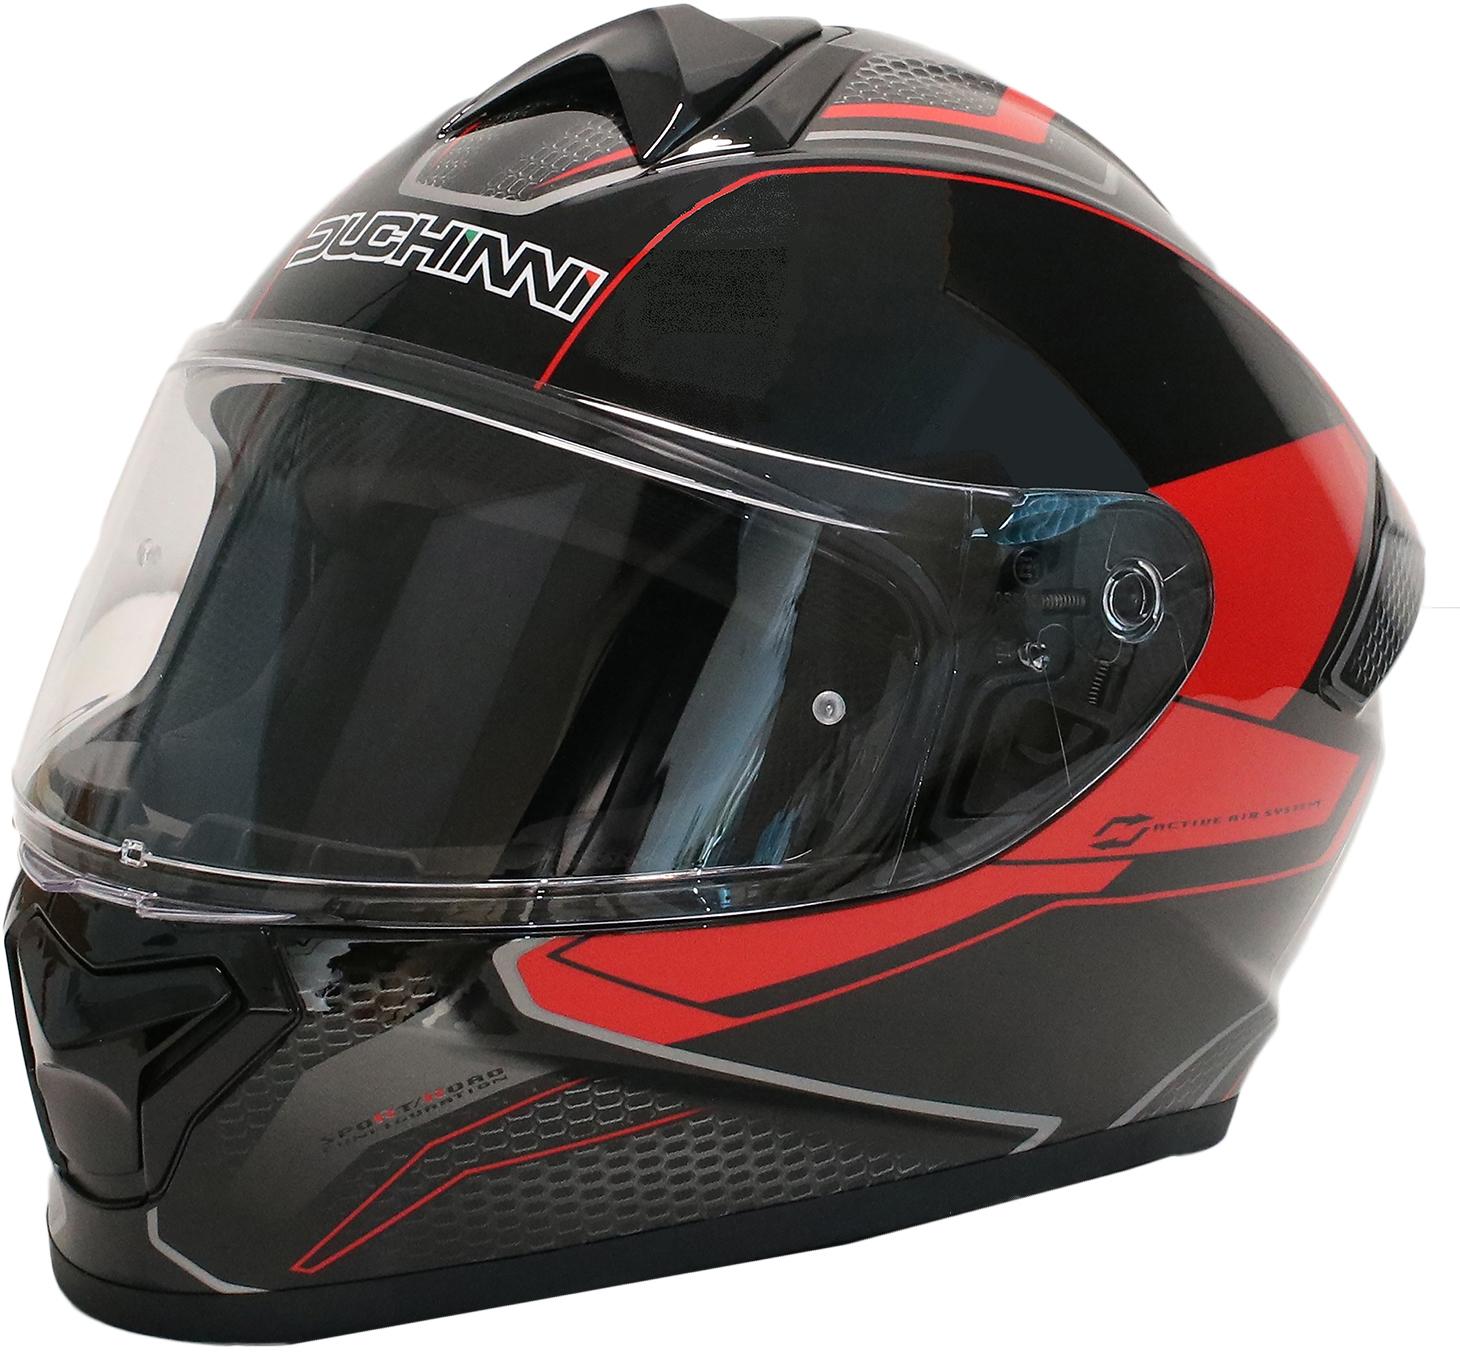 Duchinni Black/Red Helmet D977 L